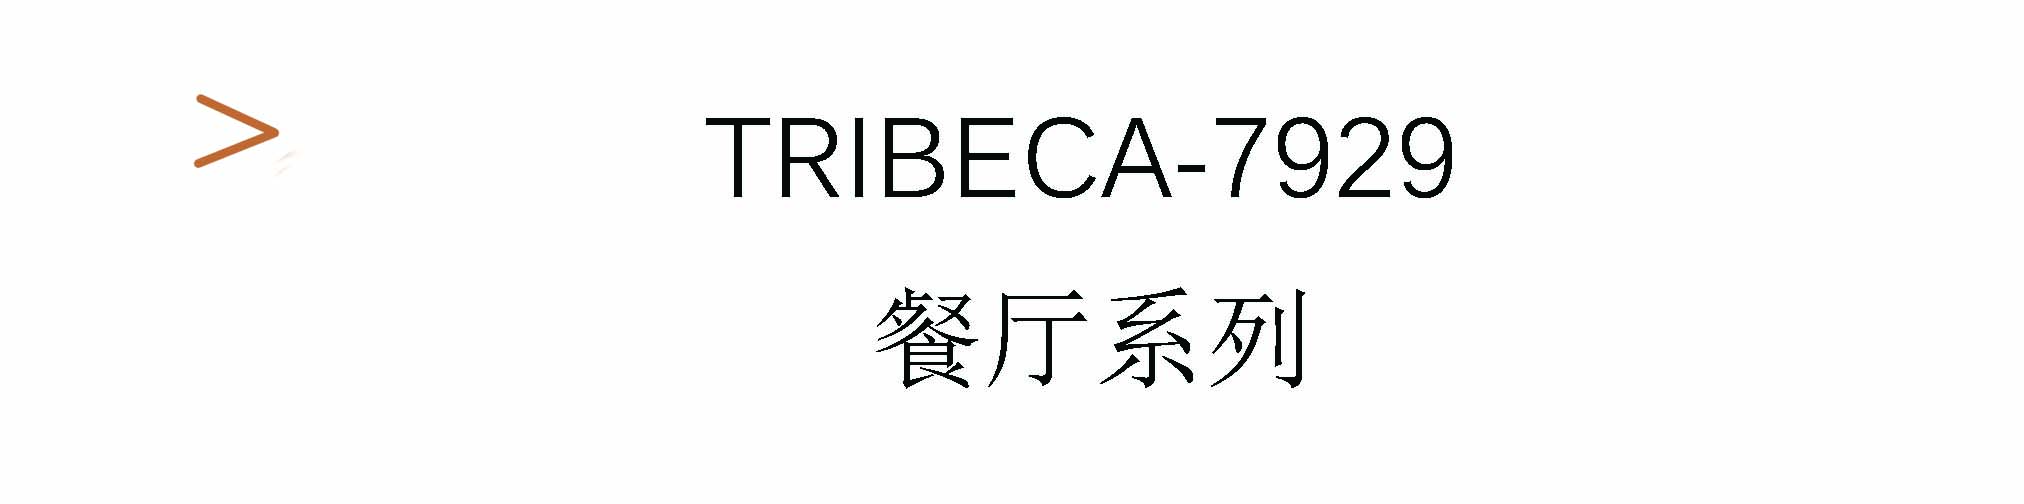 Tribeca-7929